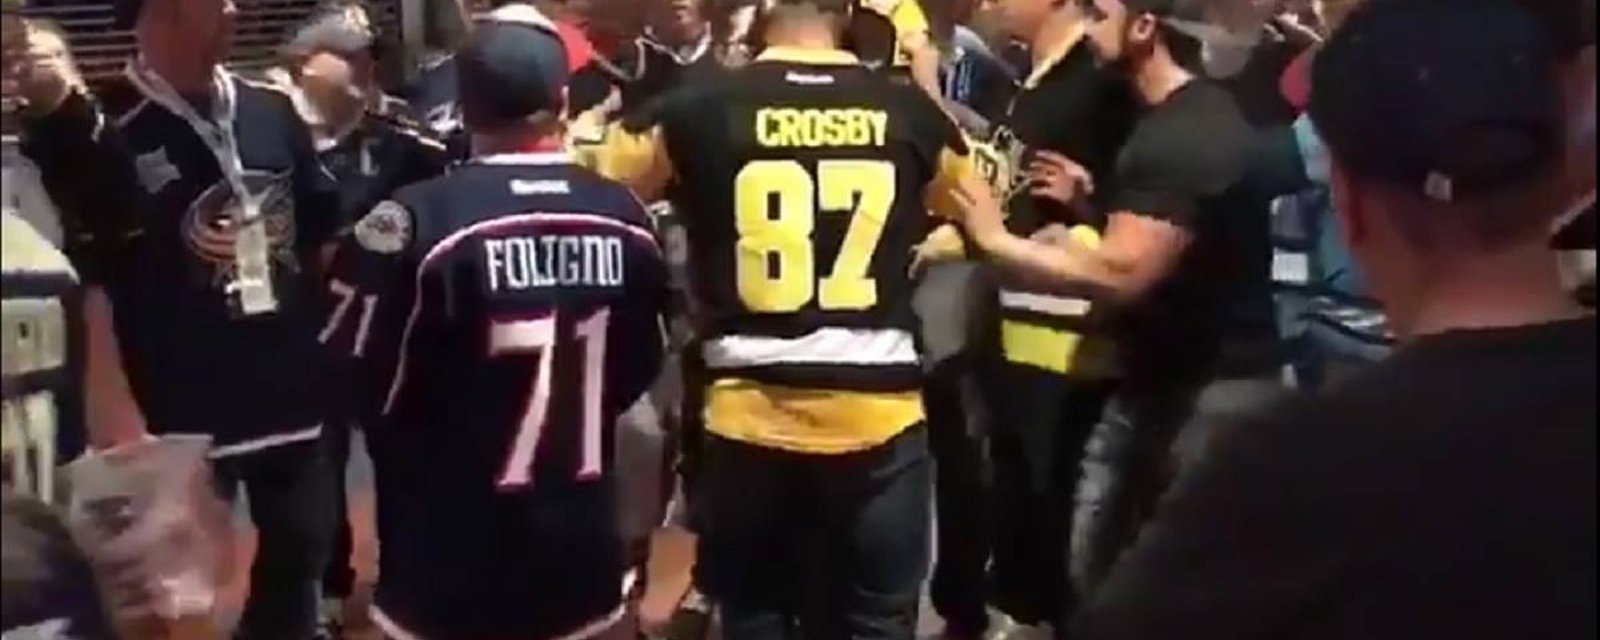 Un partisan des Penguins frappe un fan des Blue Jackets en plein visage.